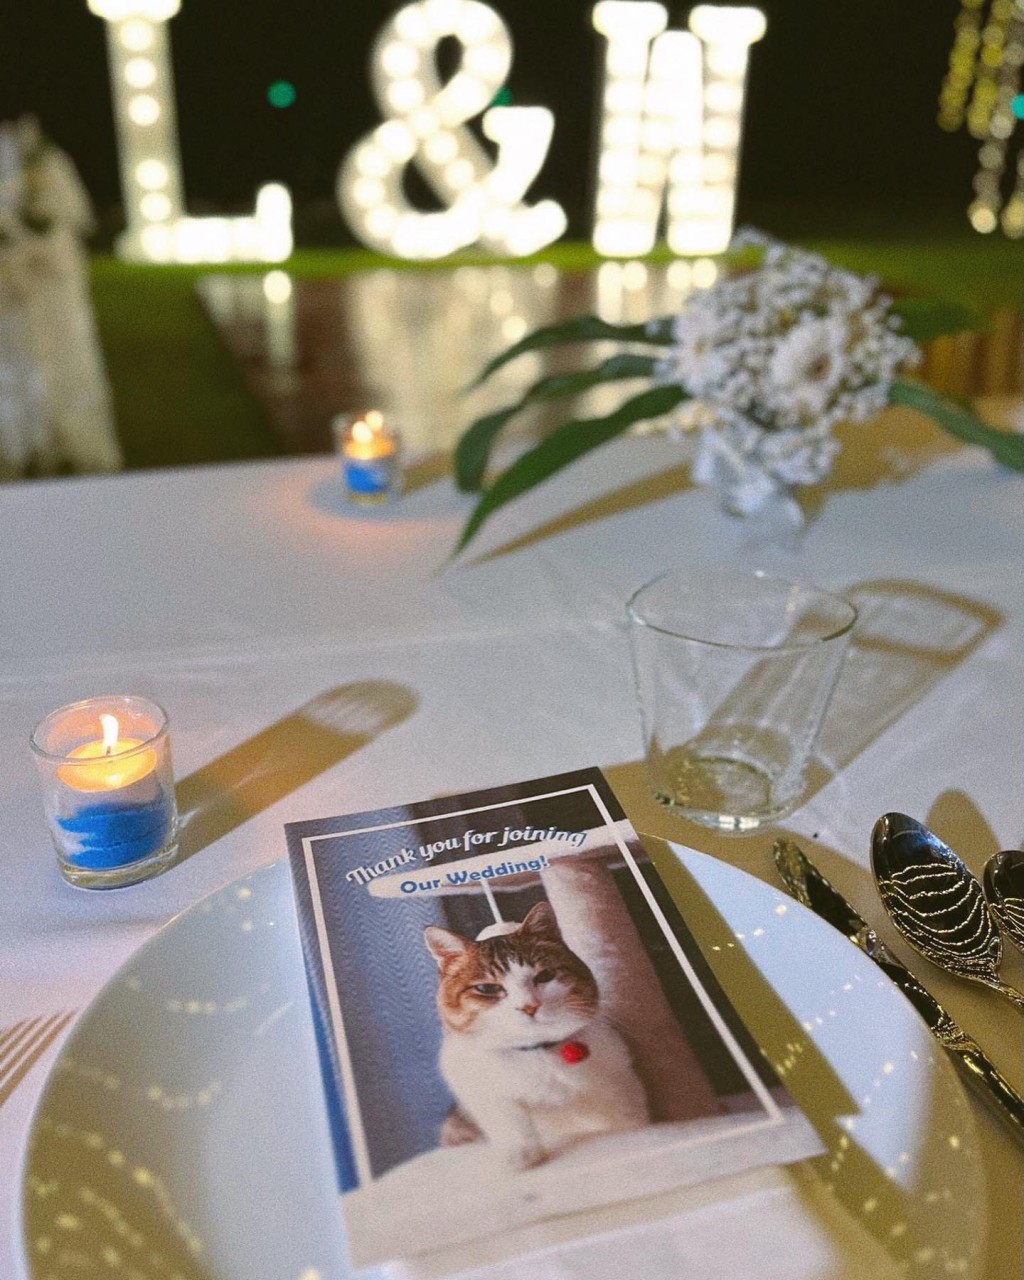 林泳淘公開婚禮現場照片。